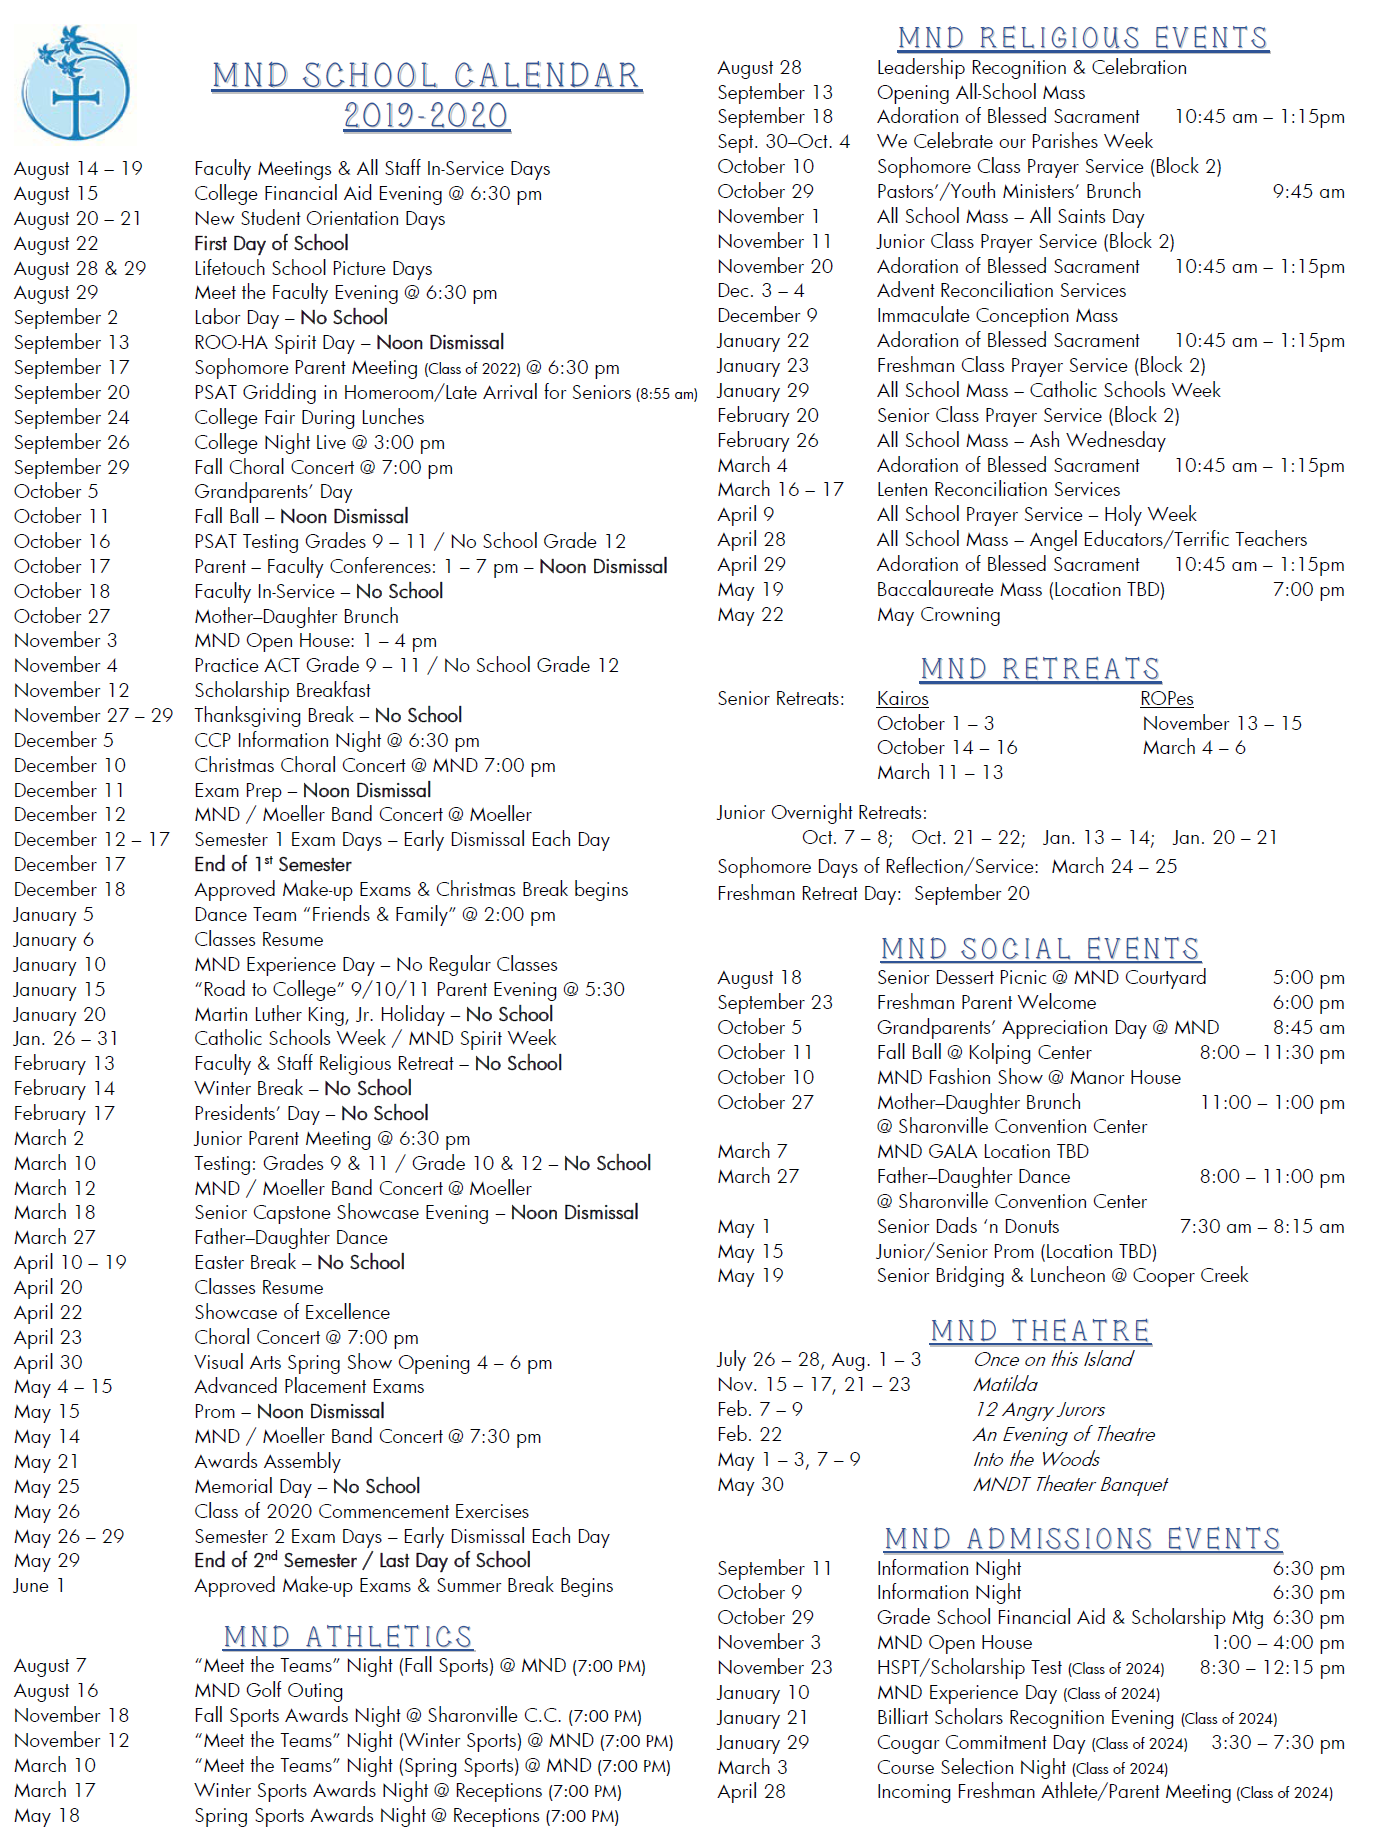 Notre Dame Calendar 2022 School Calendar With Activities - Mount Notre Dame High School